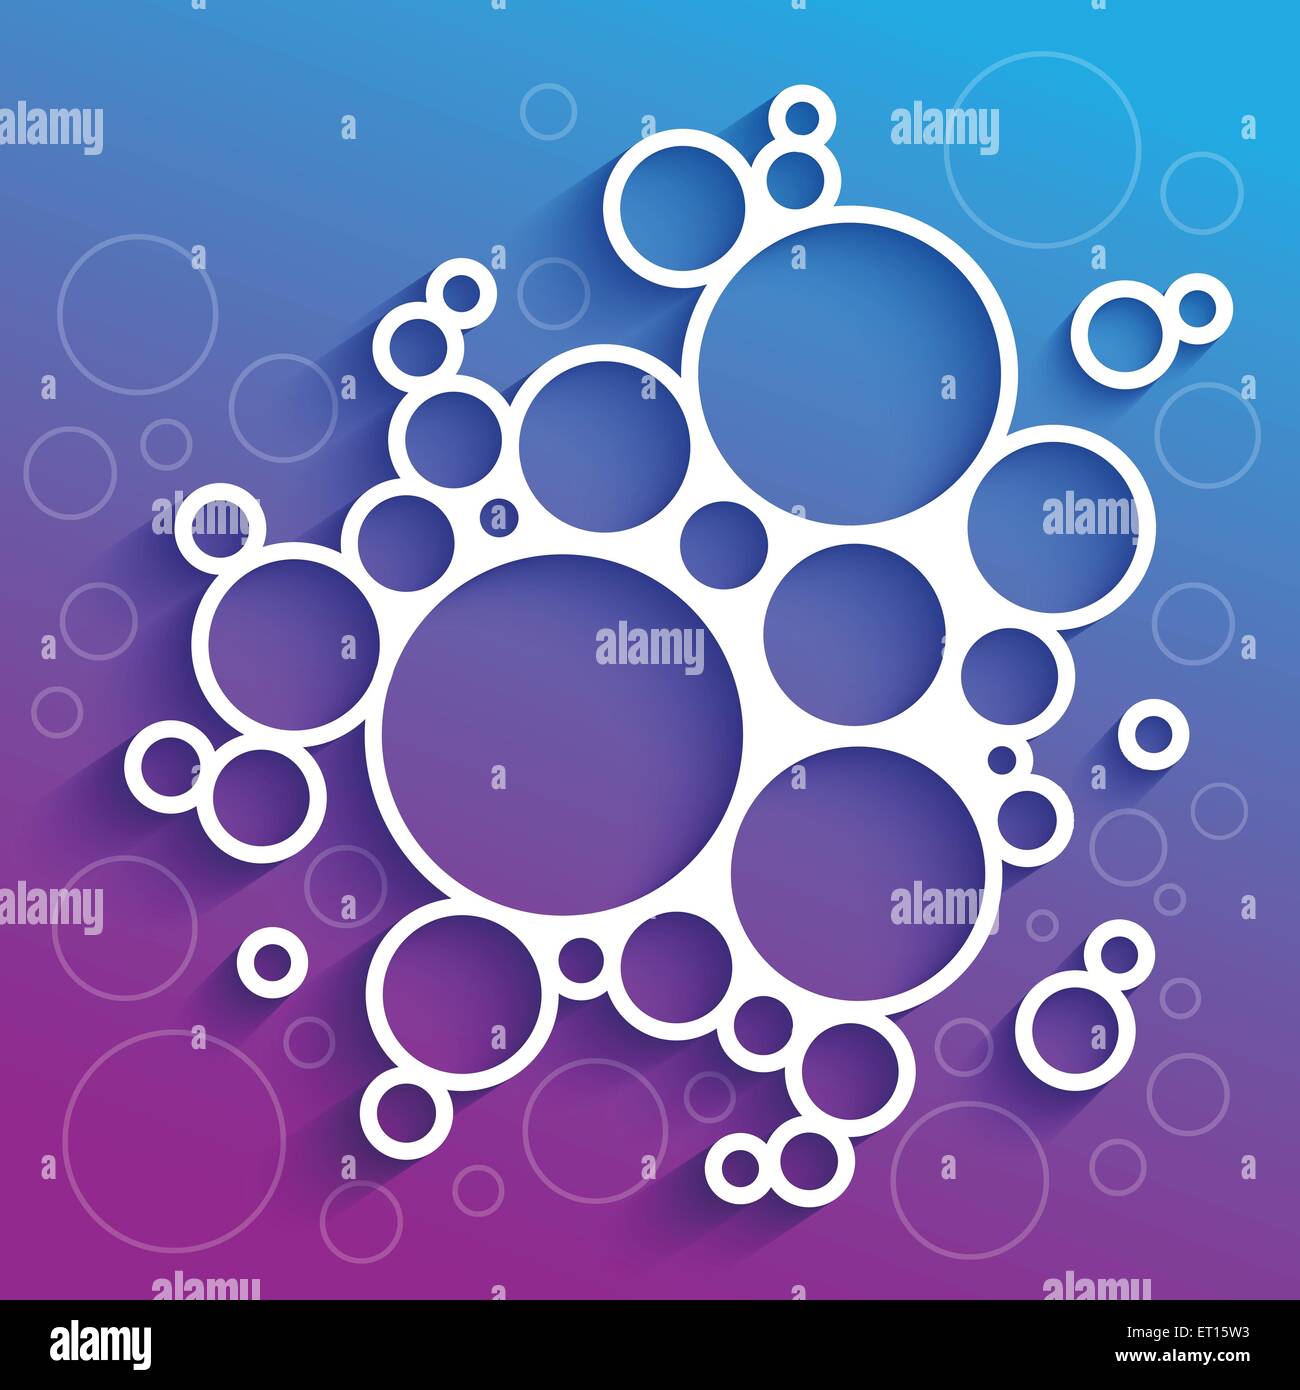 Résumé des infographies cercles blancs avec ombre sur fond violet et bleu. Illustration vecteur EPS RVB10 Illustration de Vecteur